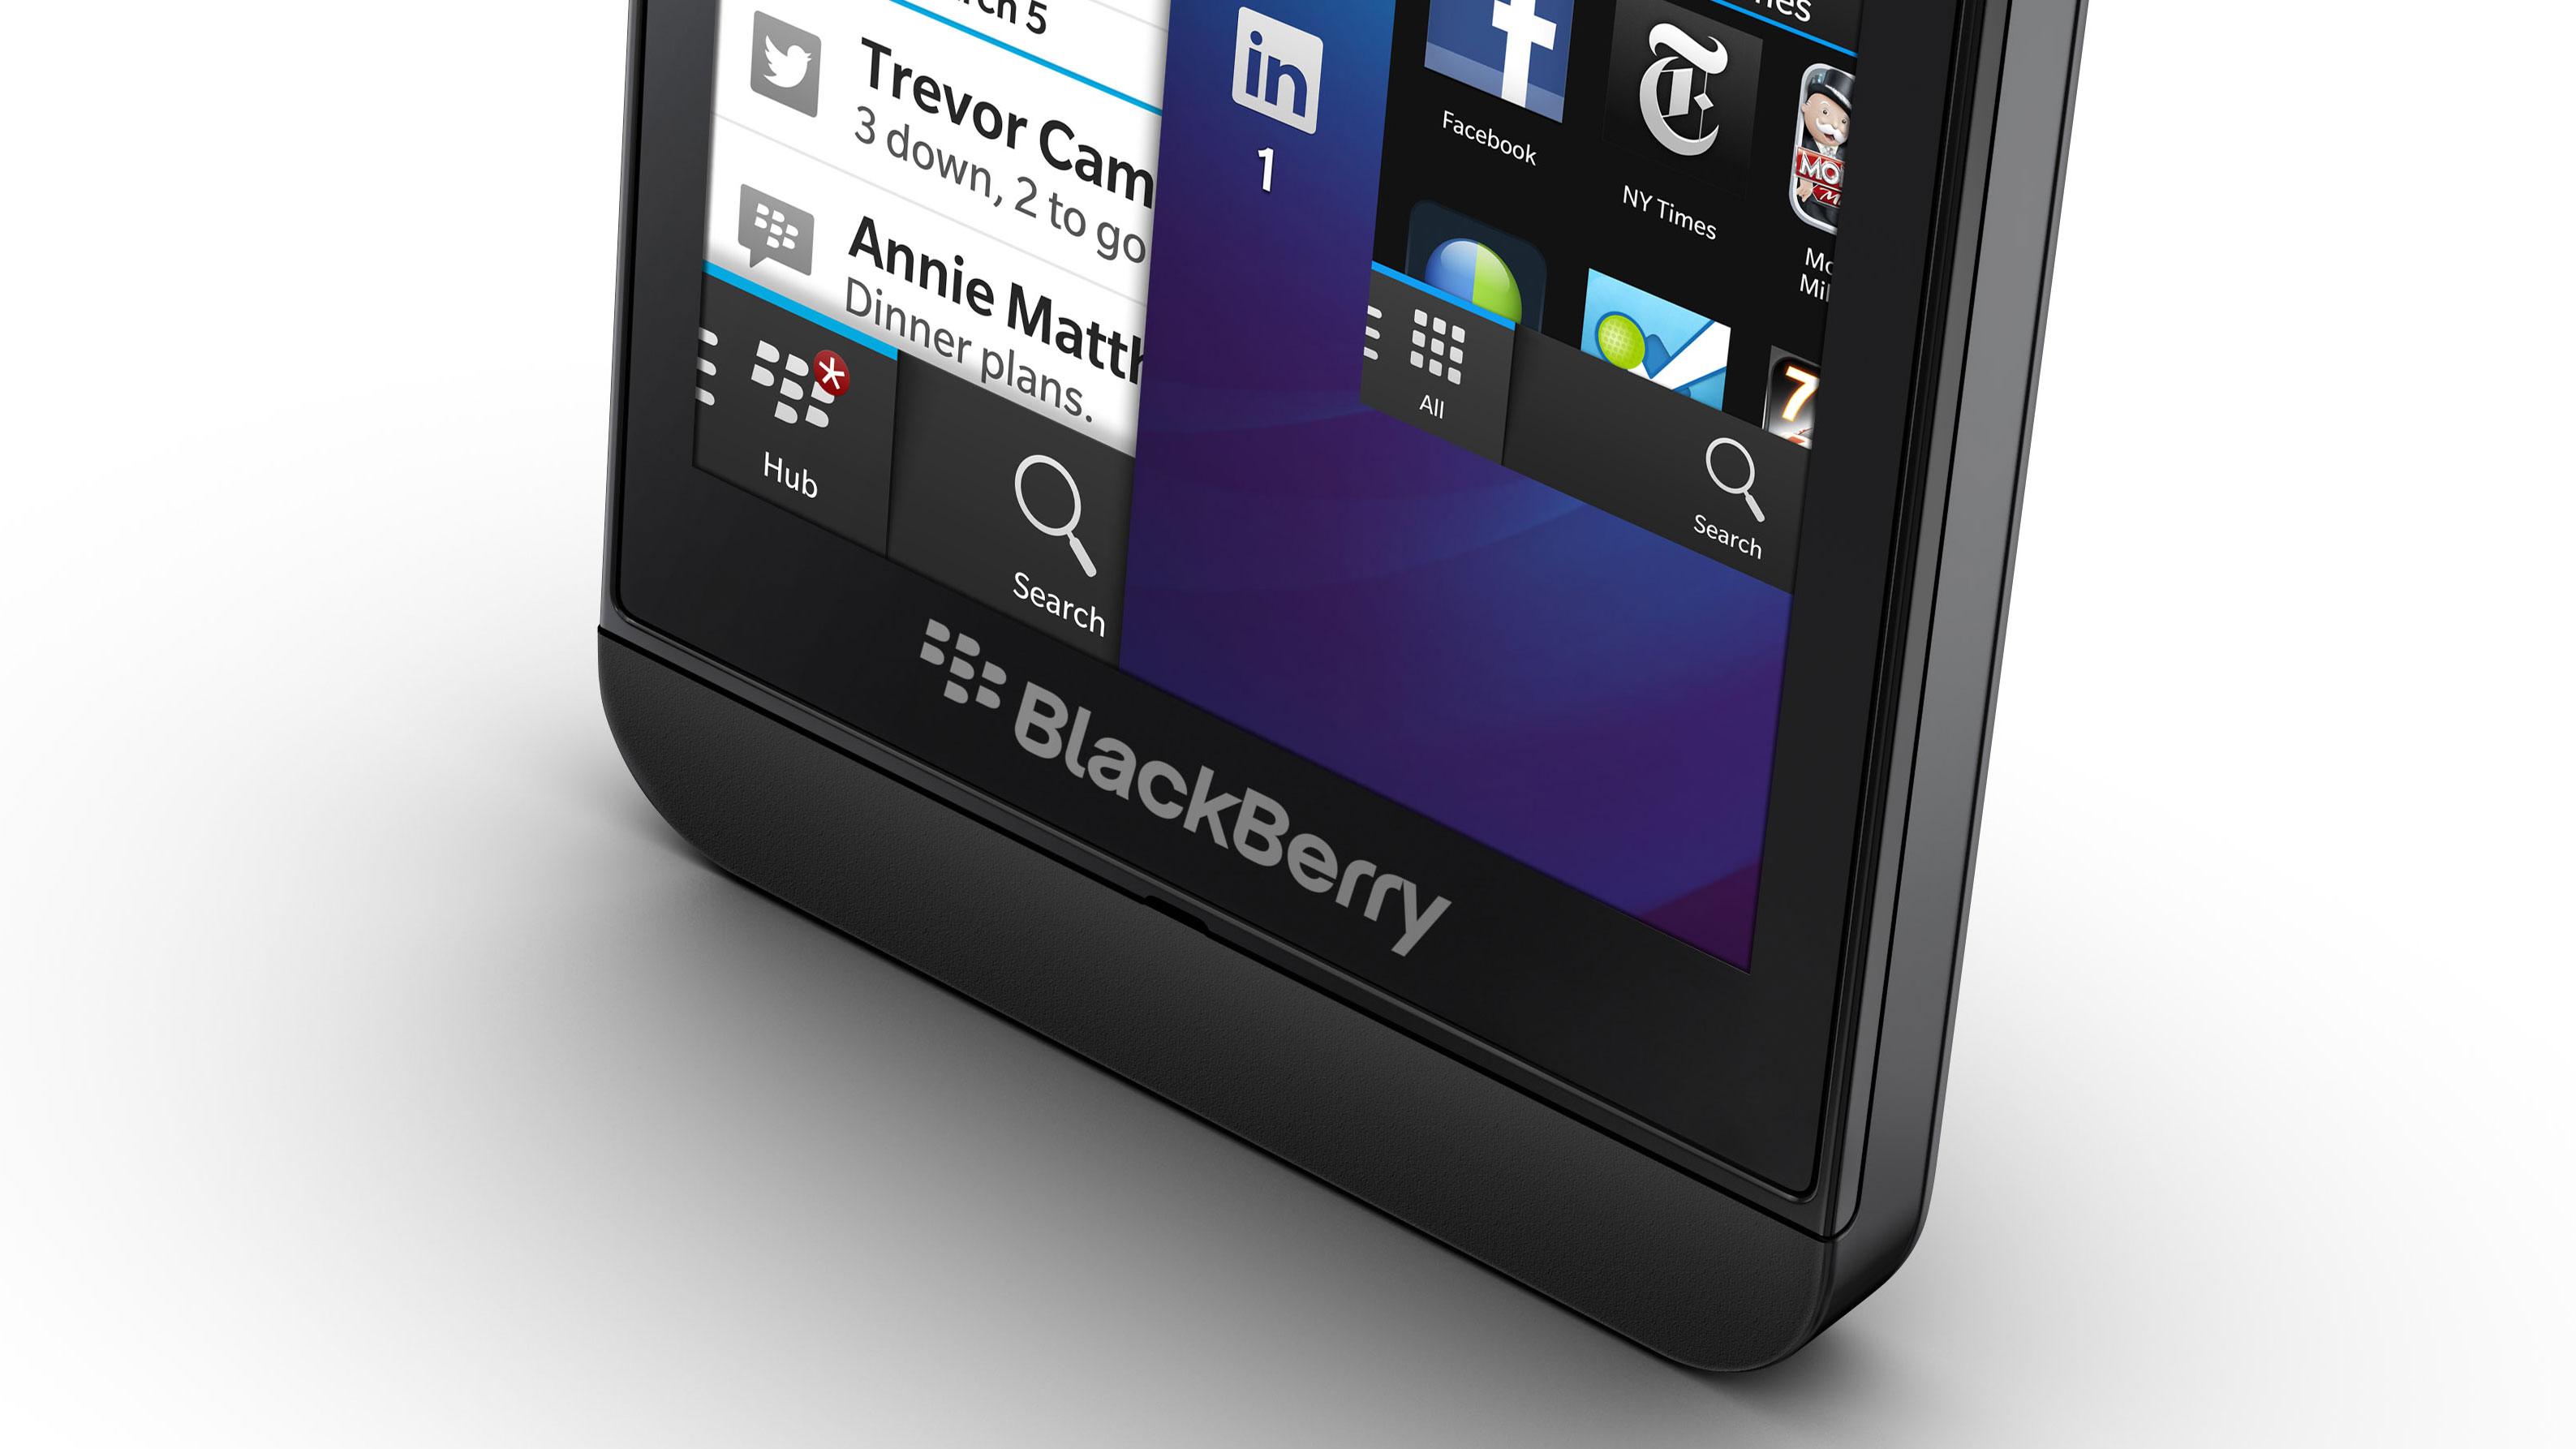 blackberry desktop software z10